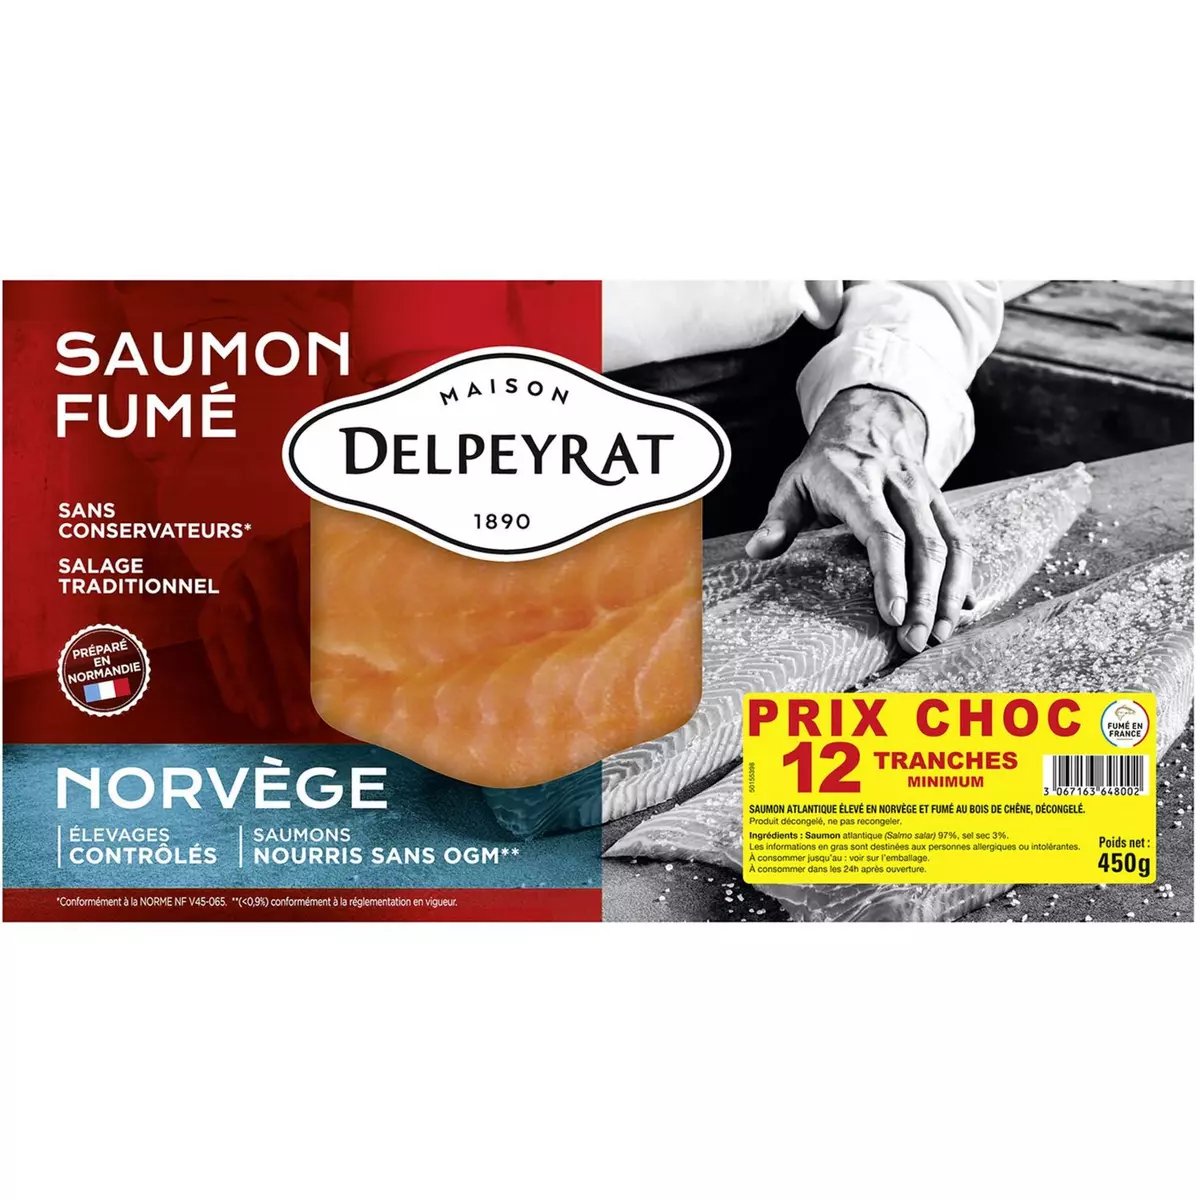 DELPEYRAT Saumon Fumé de Norvège sans OGM 12 tranches 450g